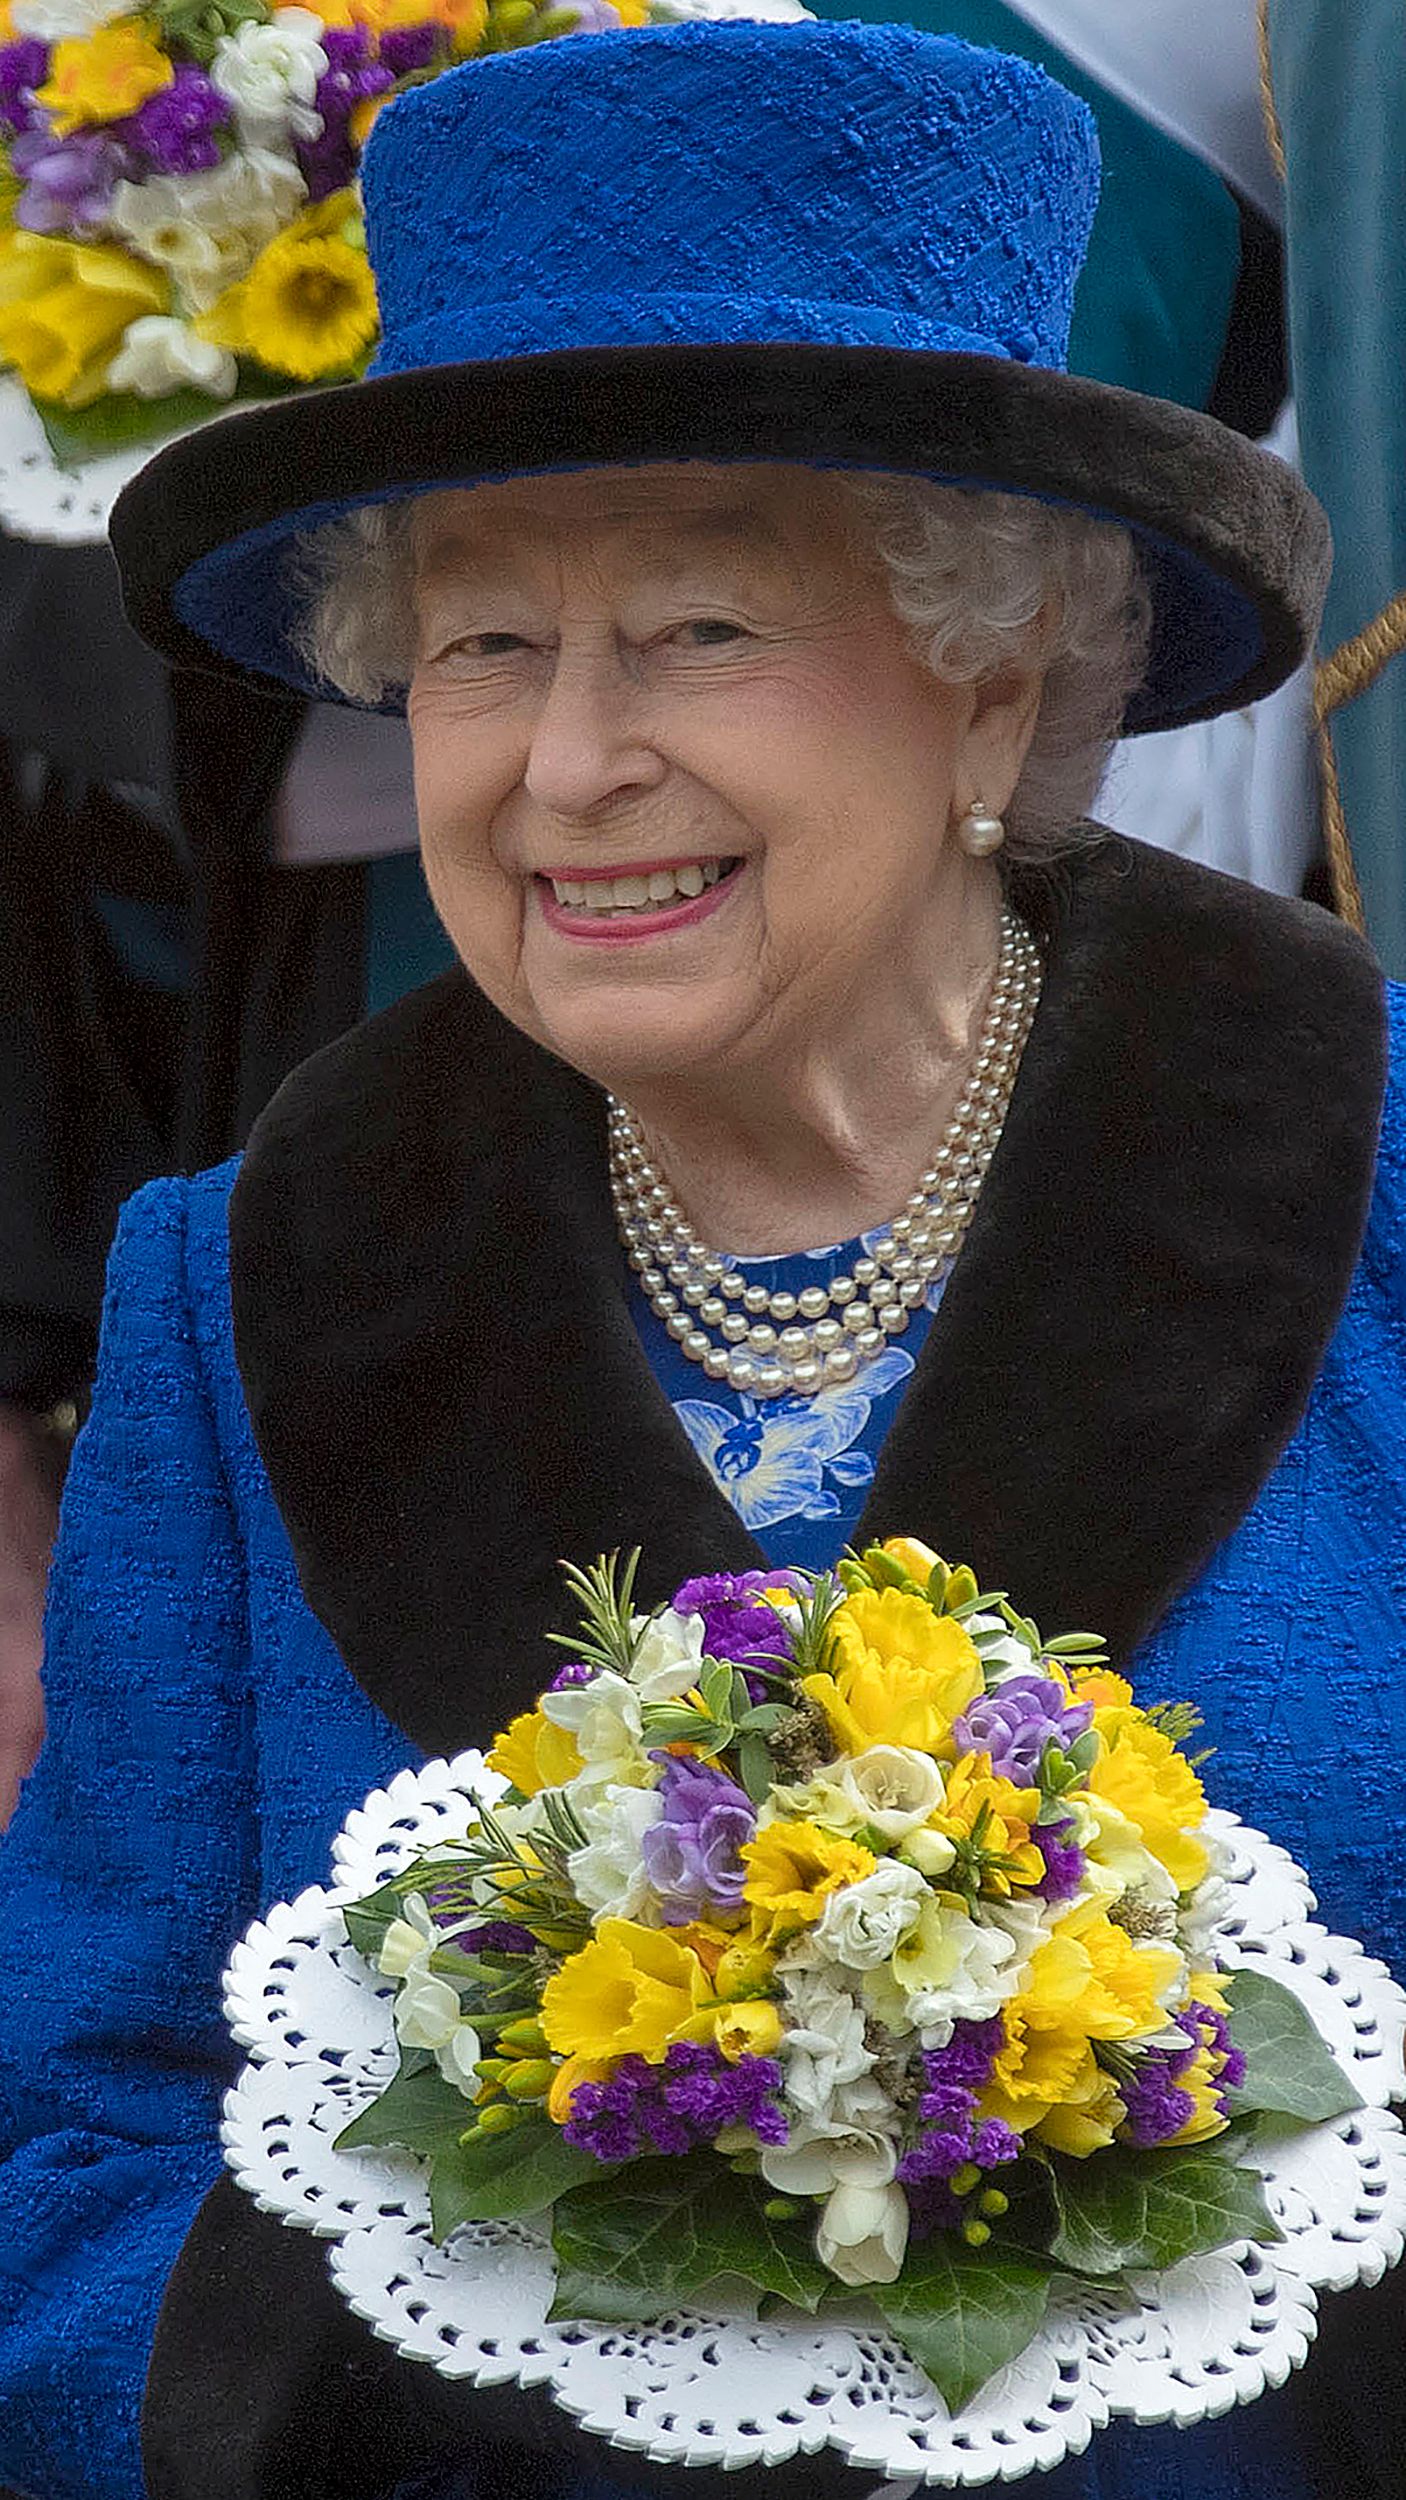 الملكة إليزابيث تحمل بوكية ورد